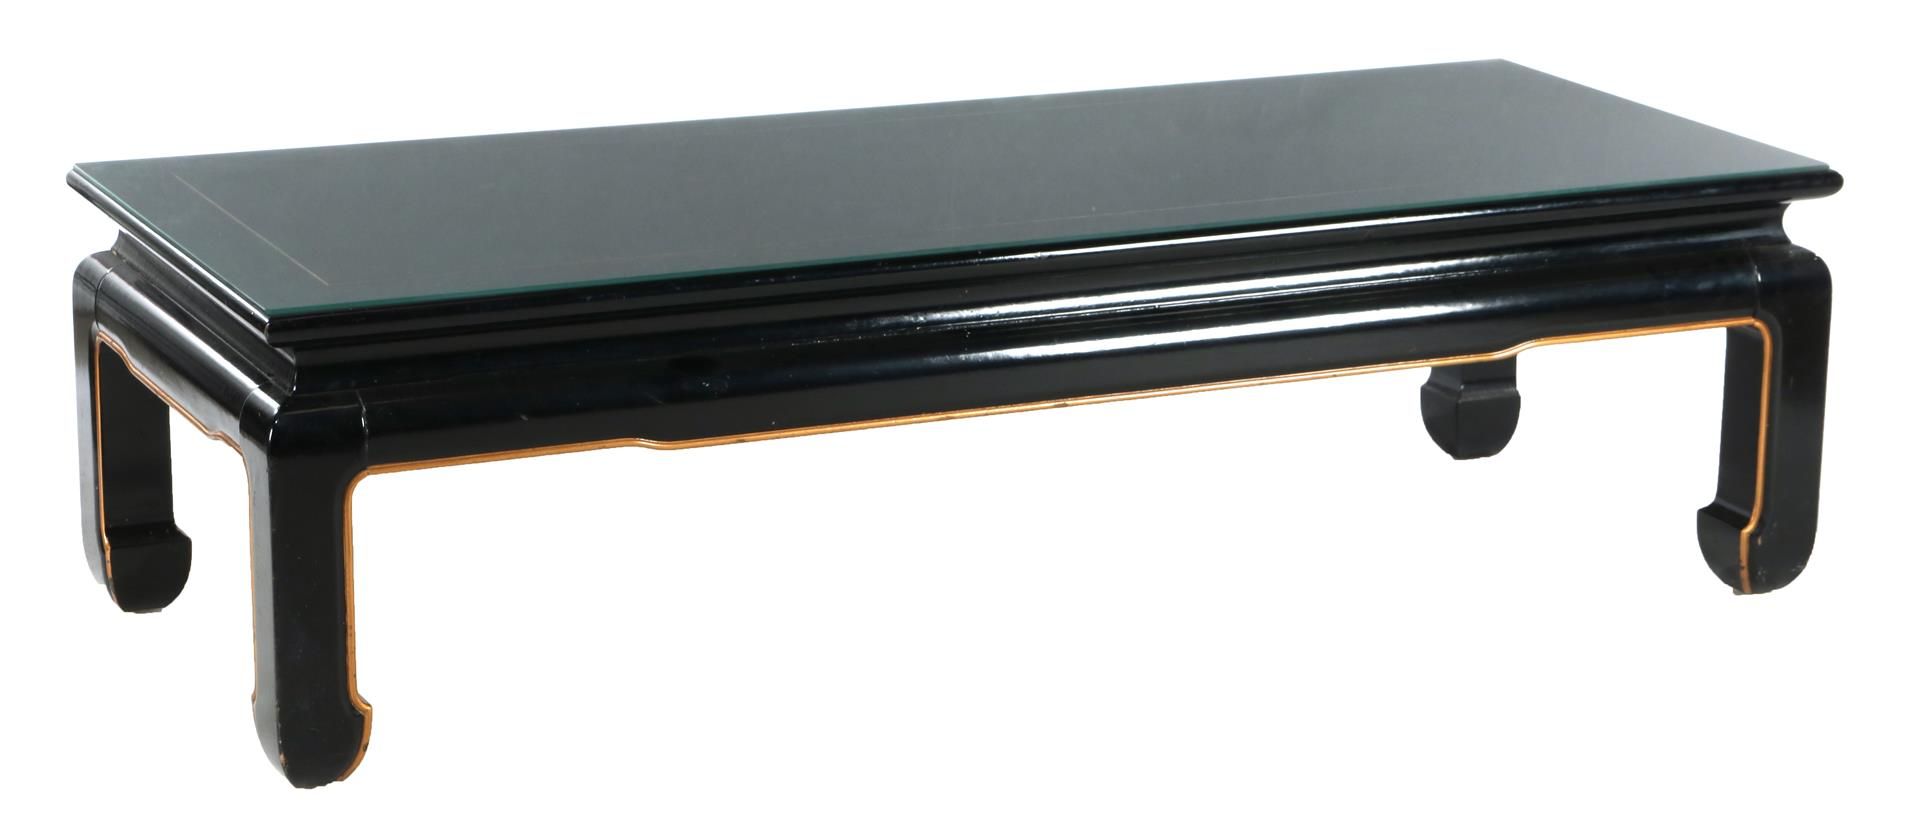 Null Tavolino in legno laccato nero, altezza 41 cm, piano 152x60 cm